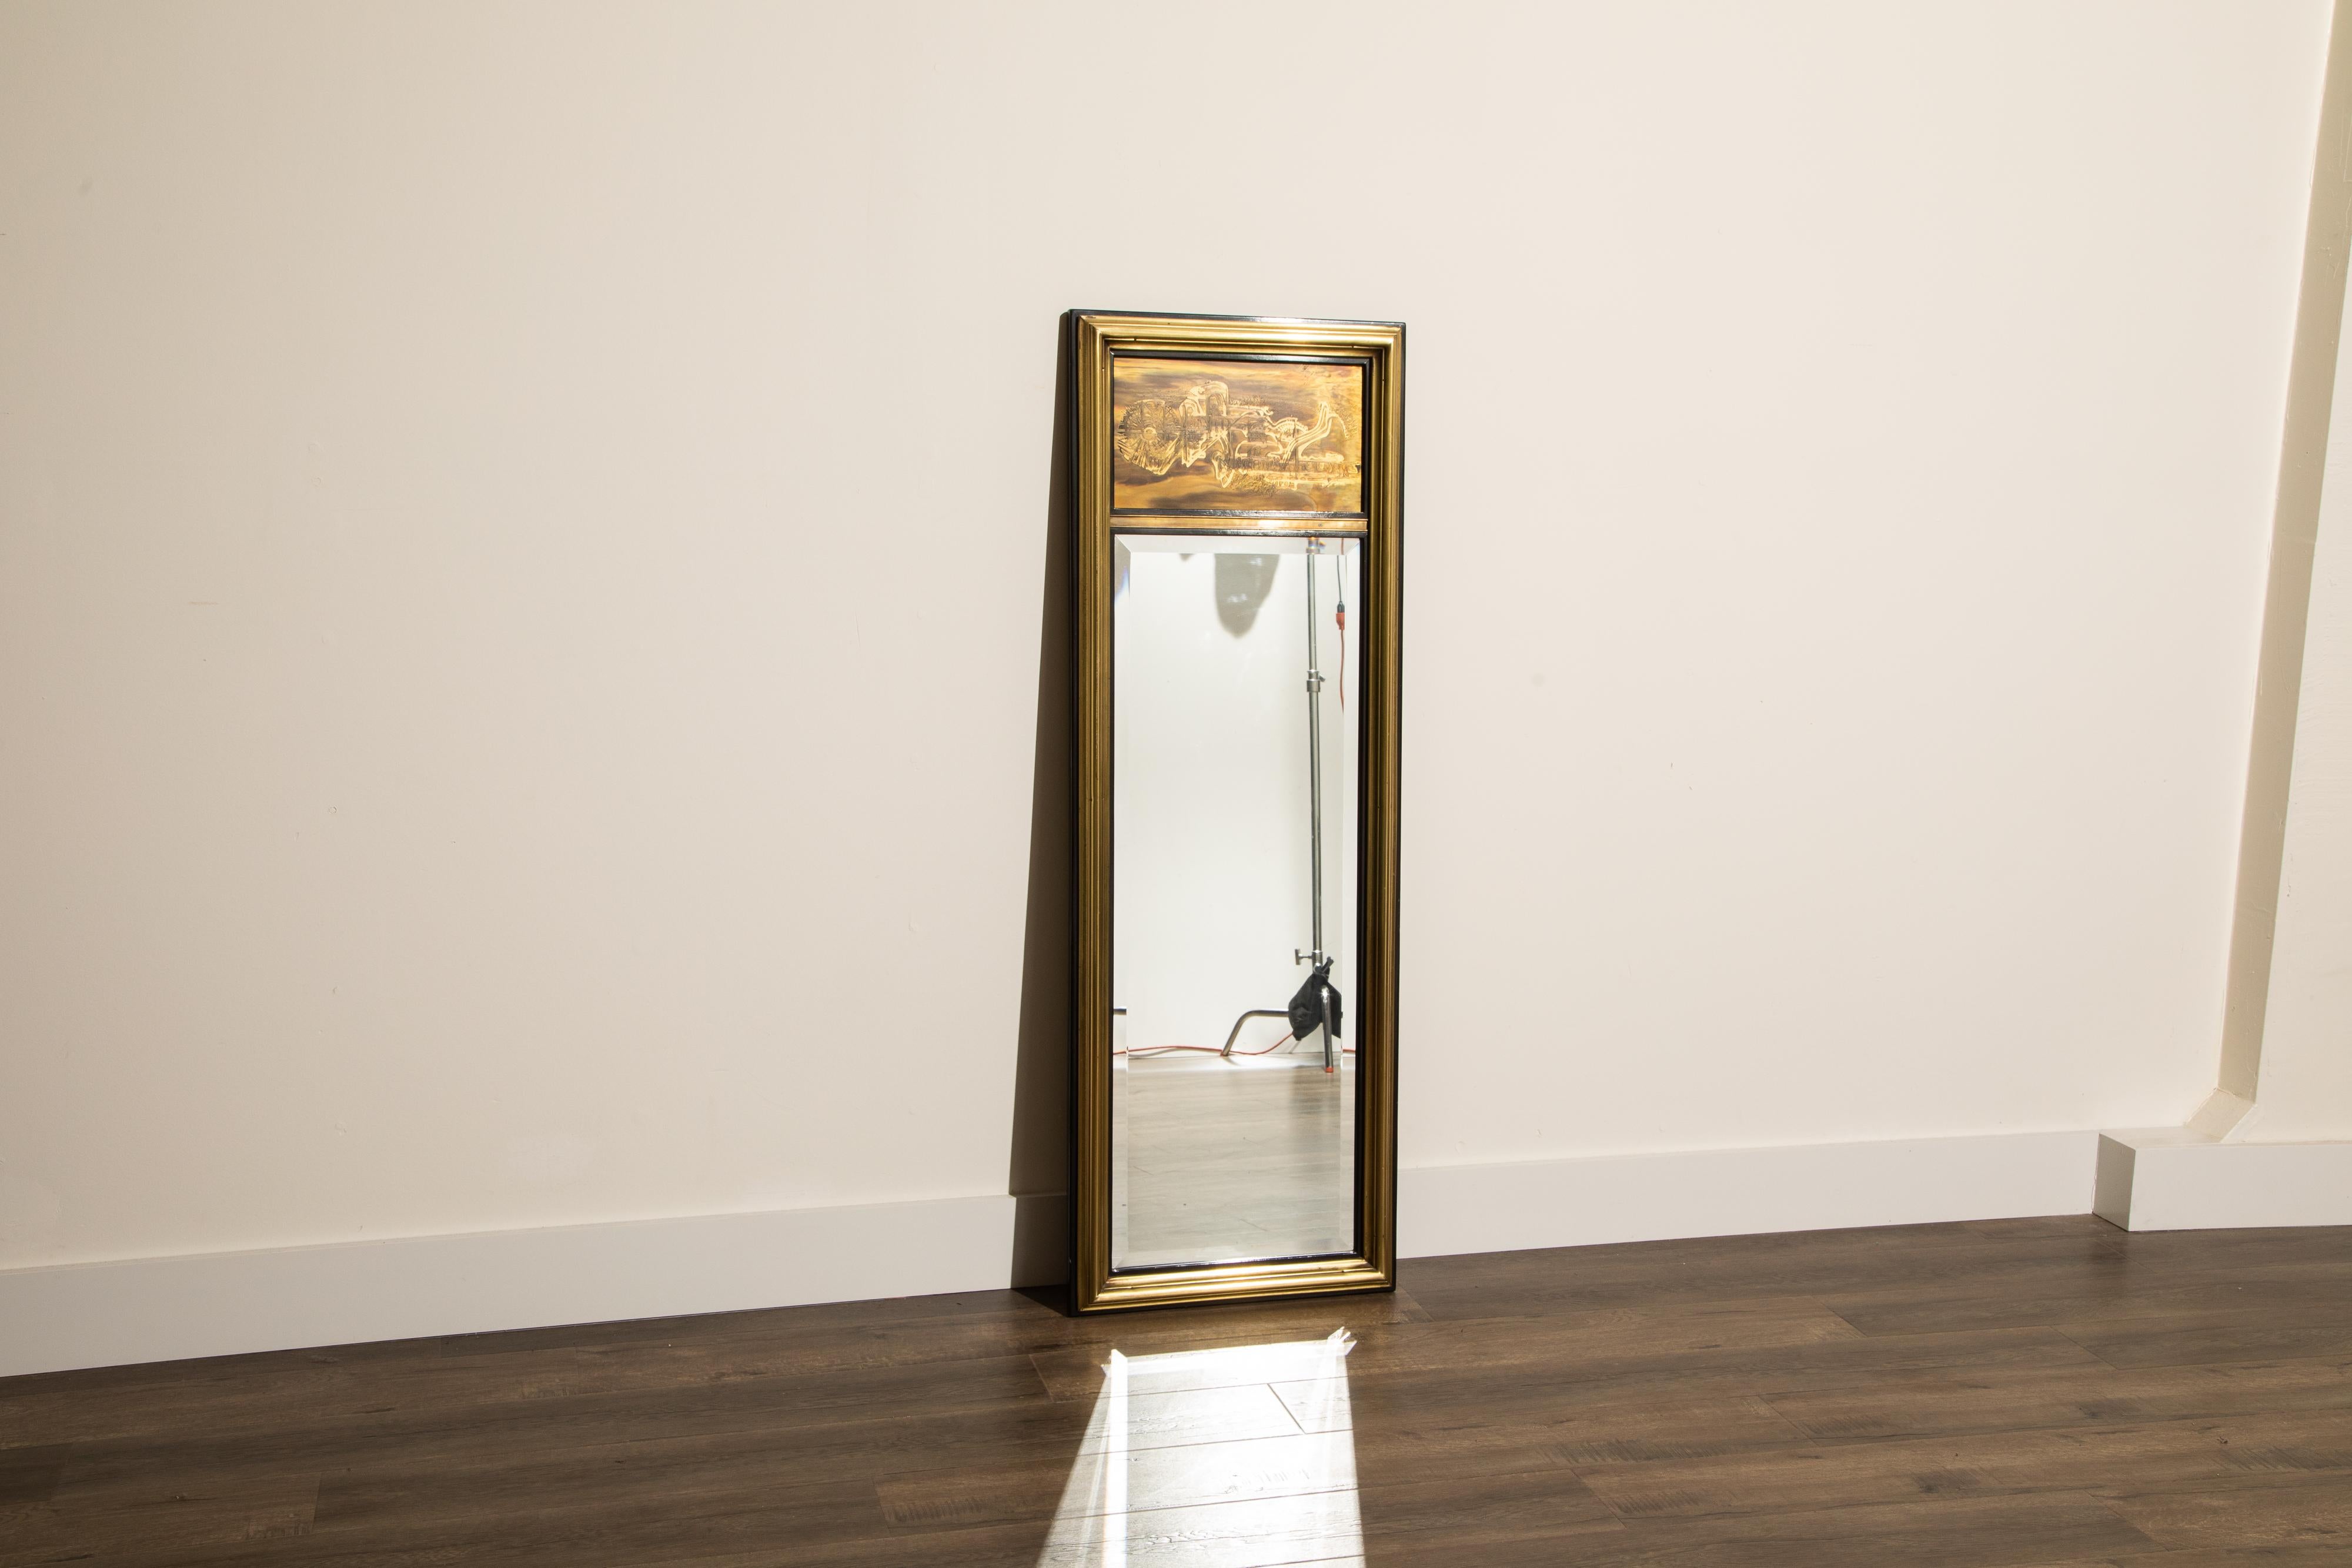 Exquisit ausgeführter rechteckiger Spiegel von Bernhard Rohne für Mastercraft. Mit schwarz lackierten und säuregeätzten Messingpaneelen von Bernhard Rohne, die ein abstraktes Freiformmuster mit abgeschrägtem Spiegel zeigen. 

Dieser schöne Spiegel